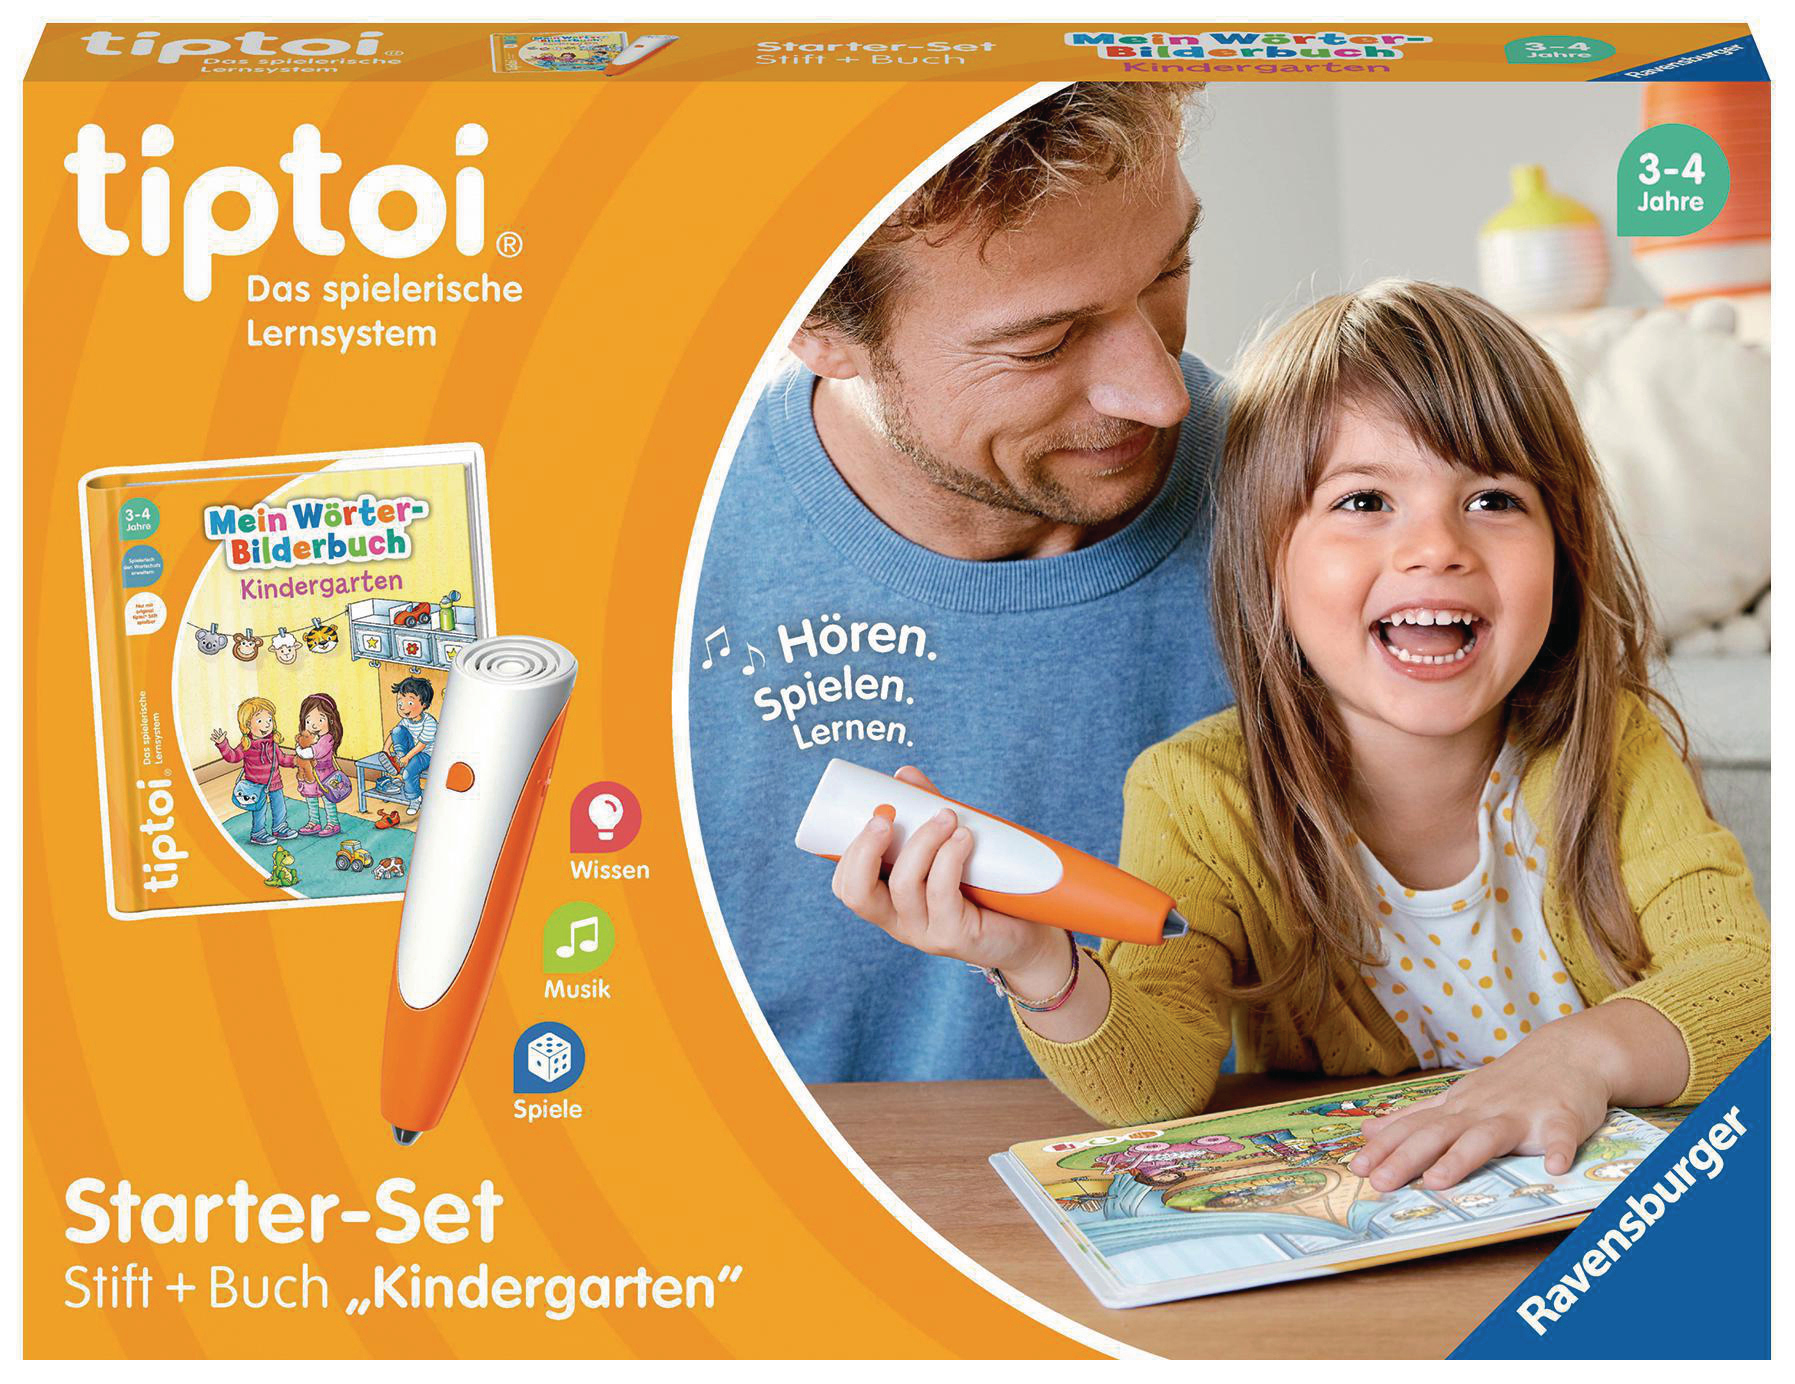 tiptoi und Starter-Set: Mehrfarbig Kindergarten Stift TIPTOI Wörter-Bilderbuch tiptoi®